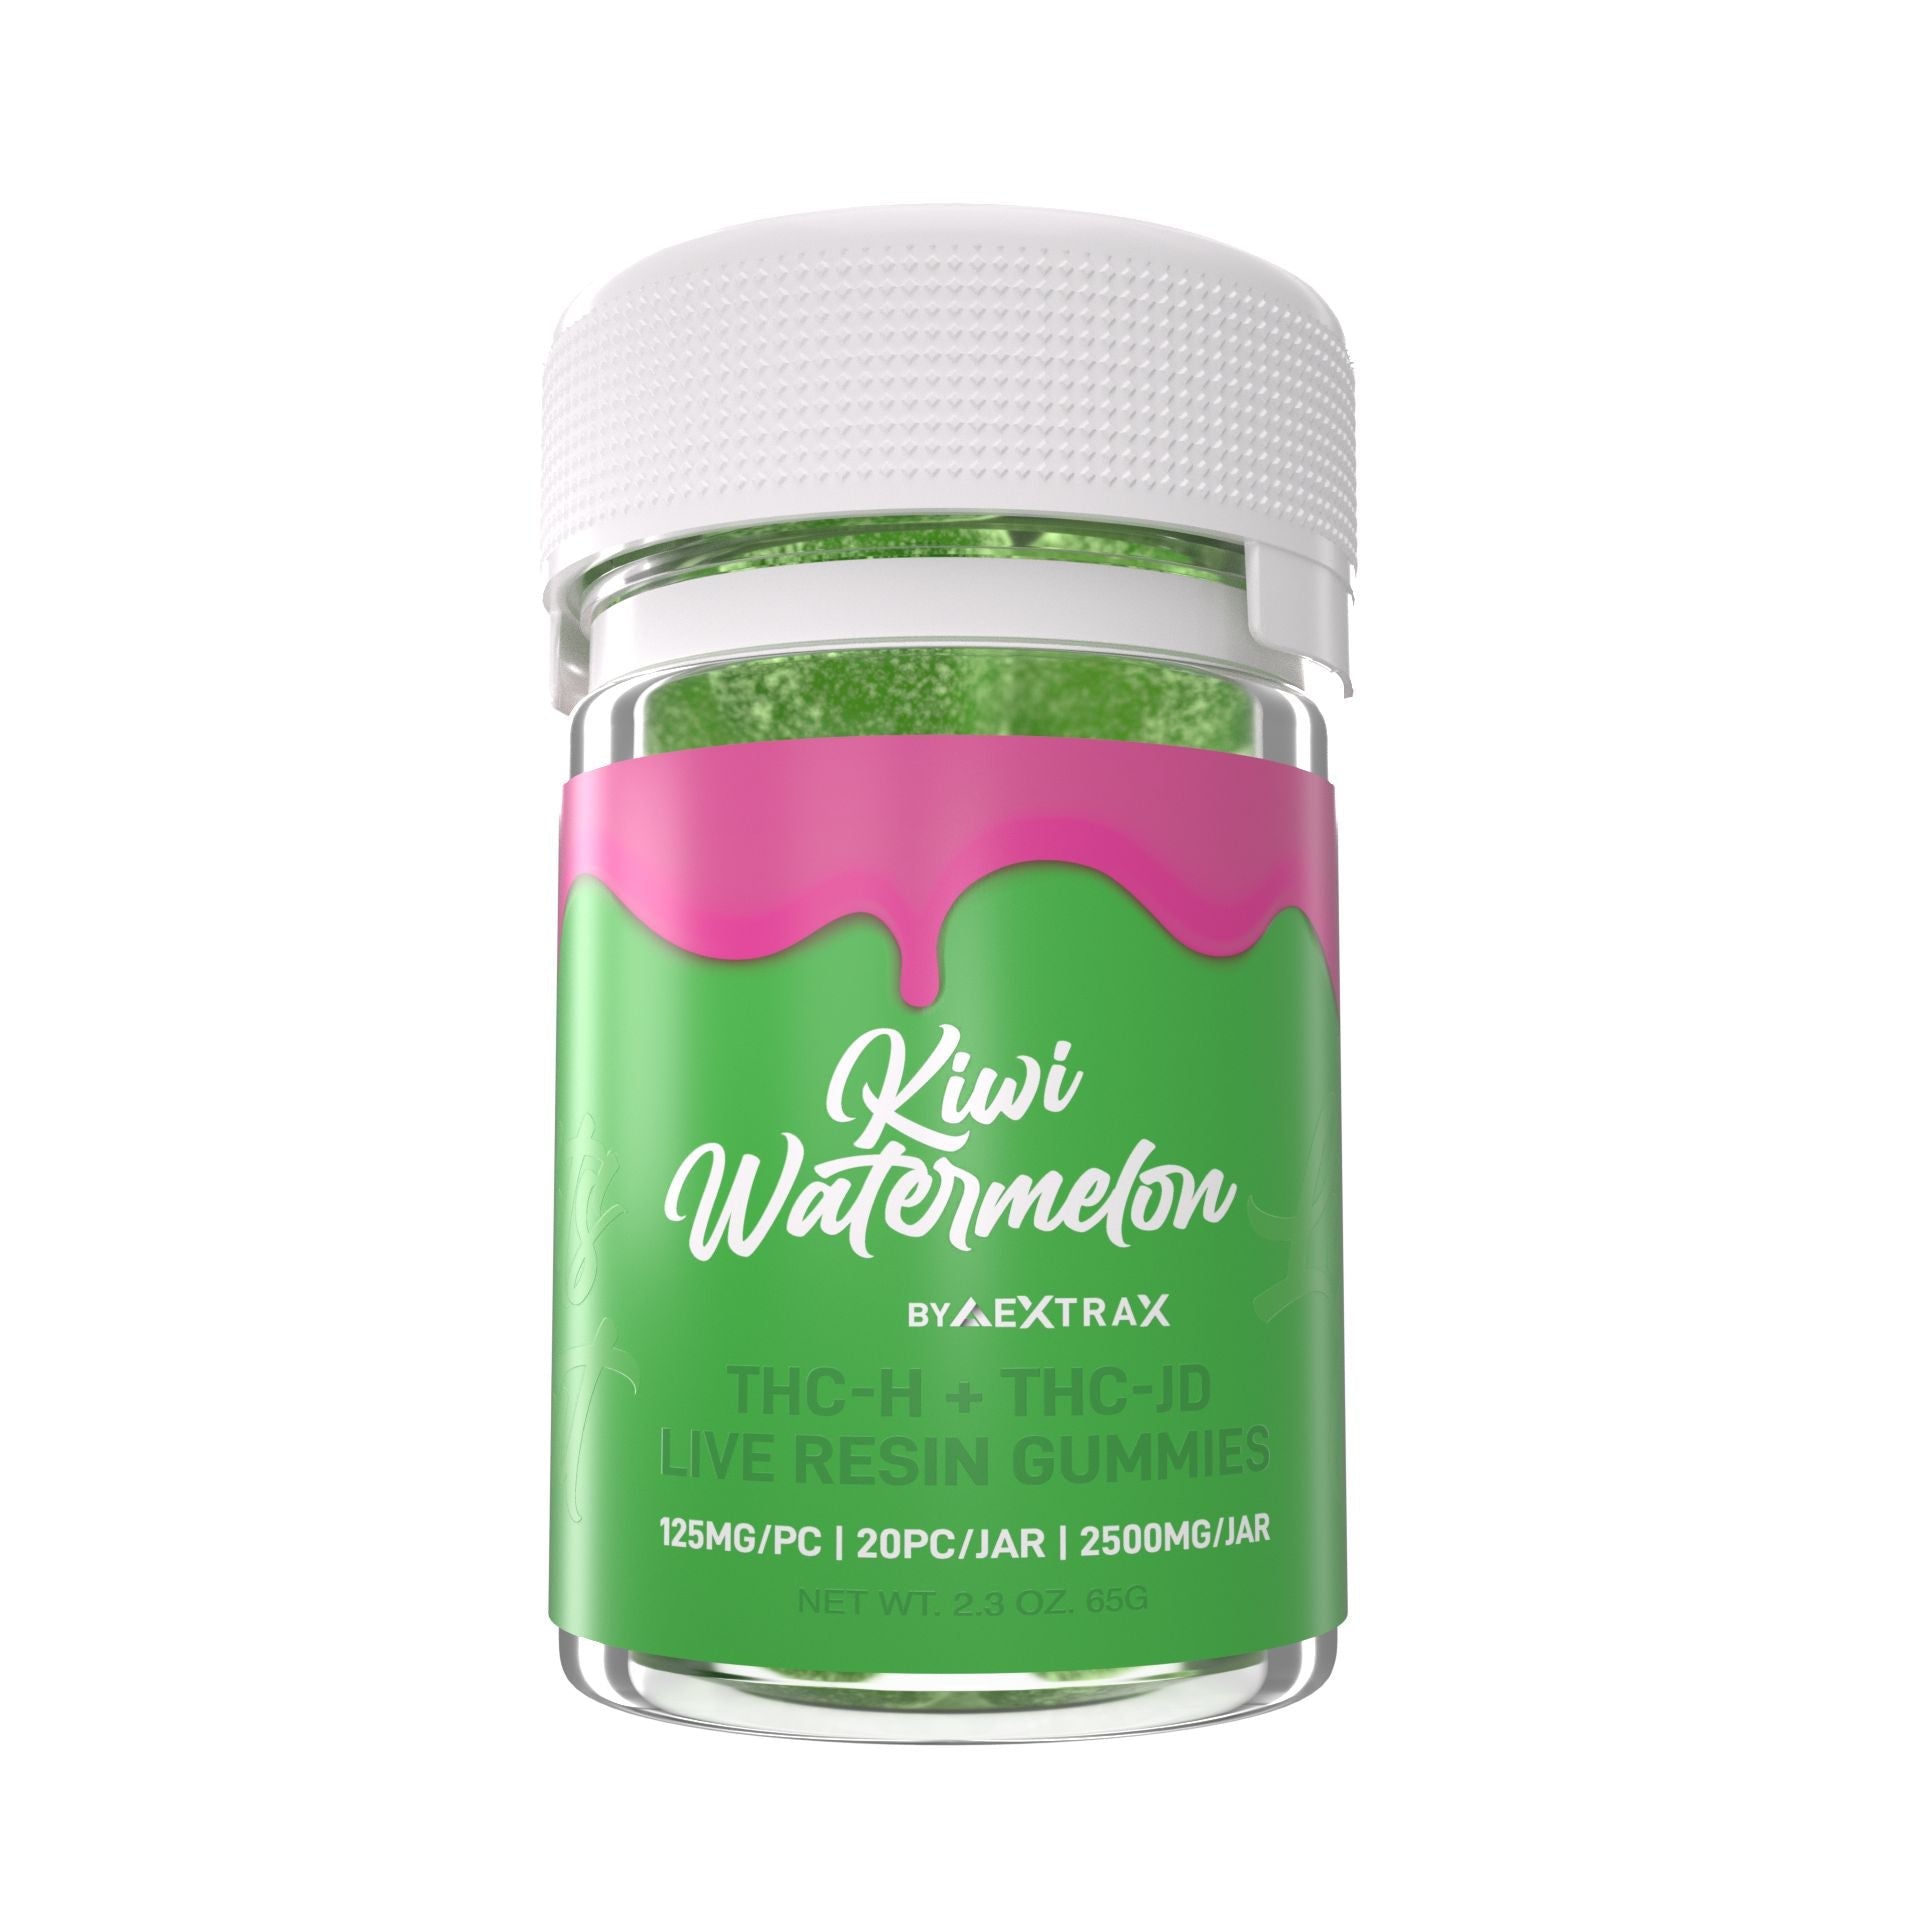 Delta Extrax Kiwi Watermelon THCh THCjd Gummies 2500mg Best Price